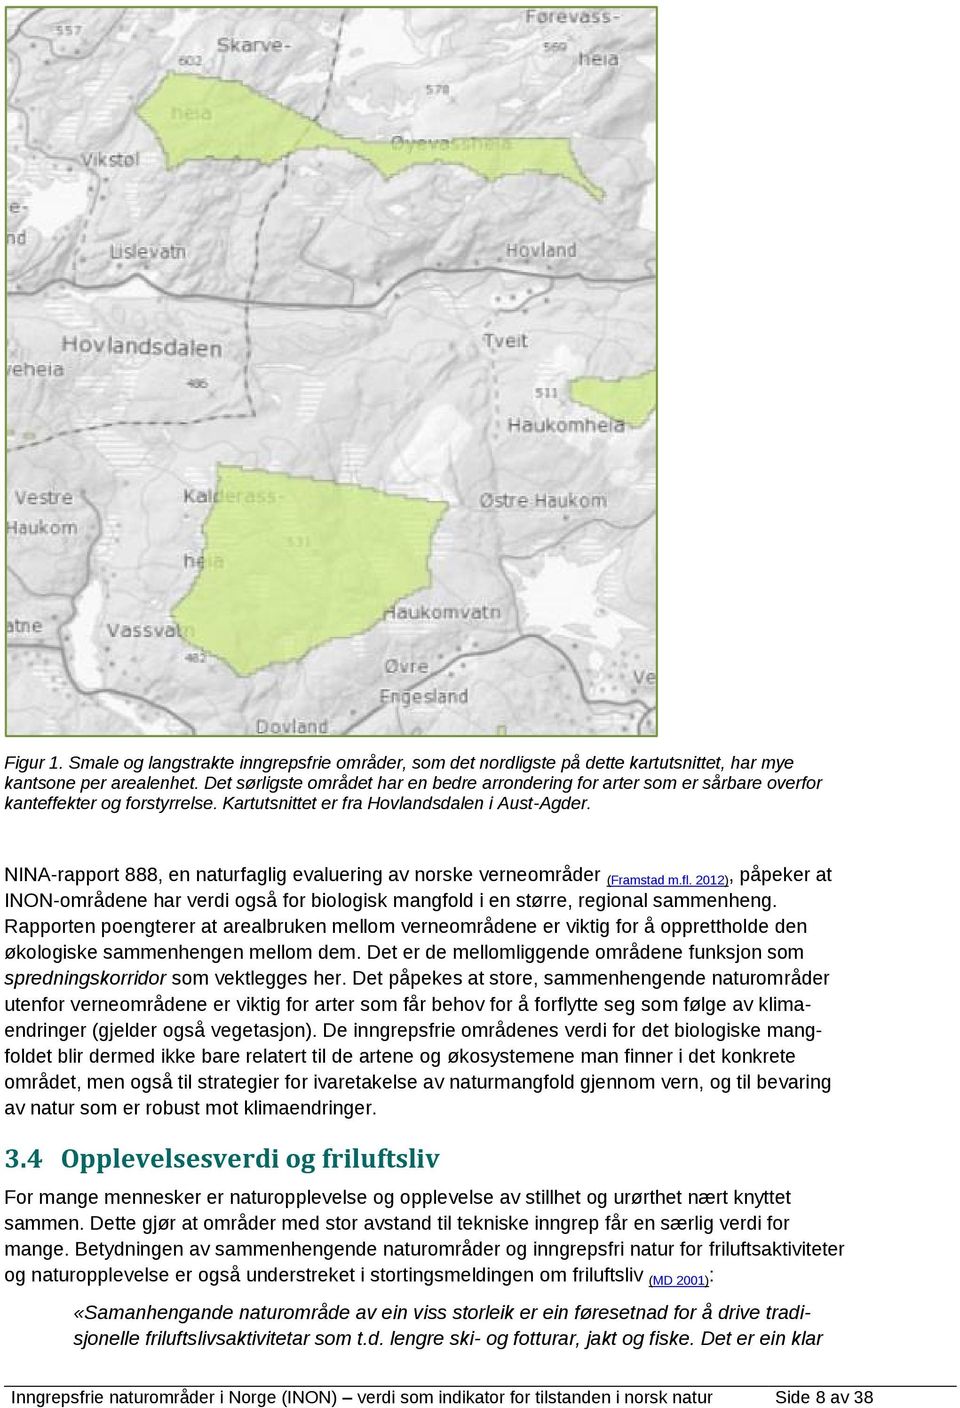 NINA-rapport 888, en naturfaglig evaluering av norske verneområder (Framstad m.fl. 2012), påpeker at INON-områdene har verdi også for biologisk mangfold i en større, regional sammenheng.